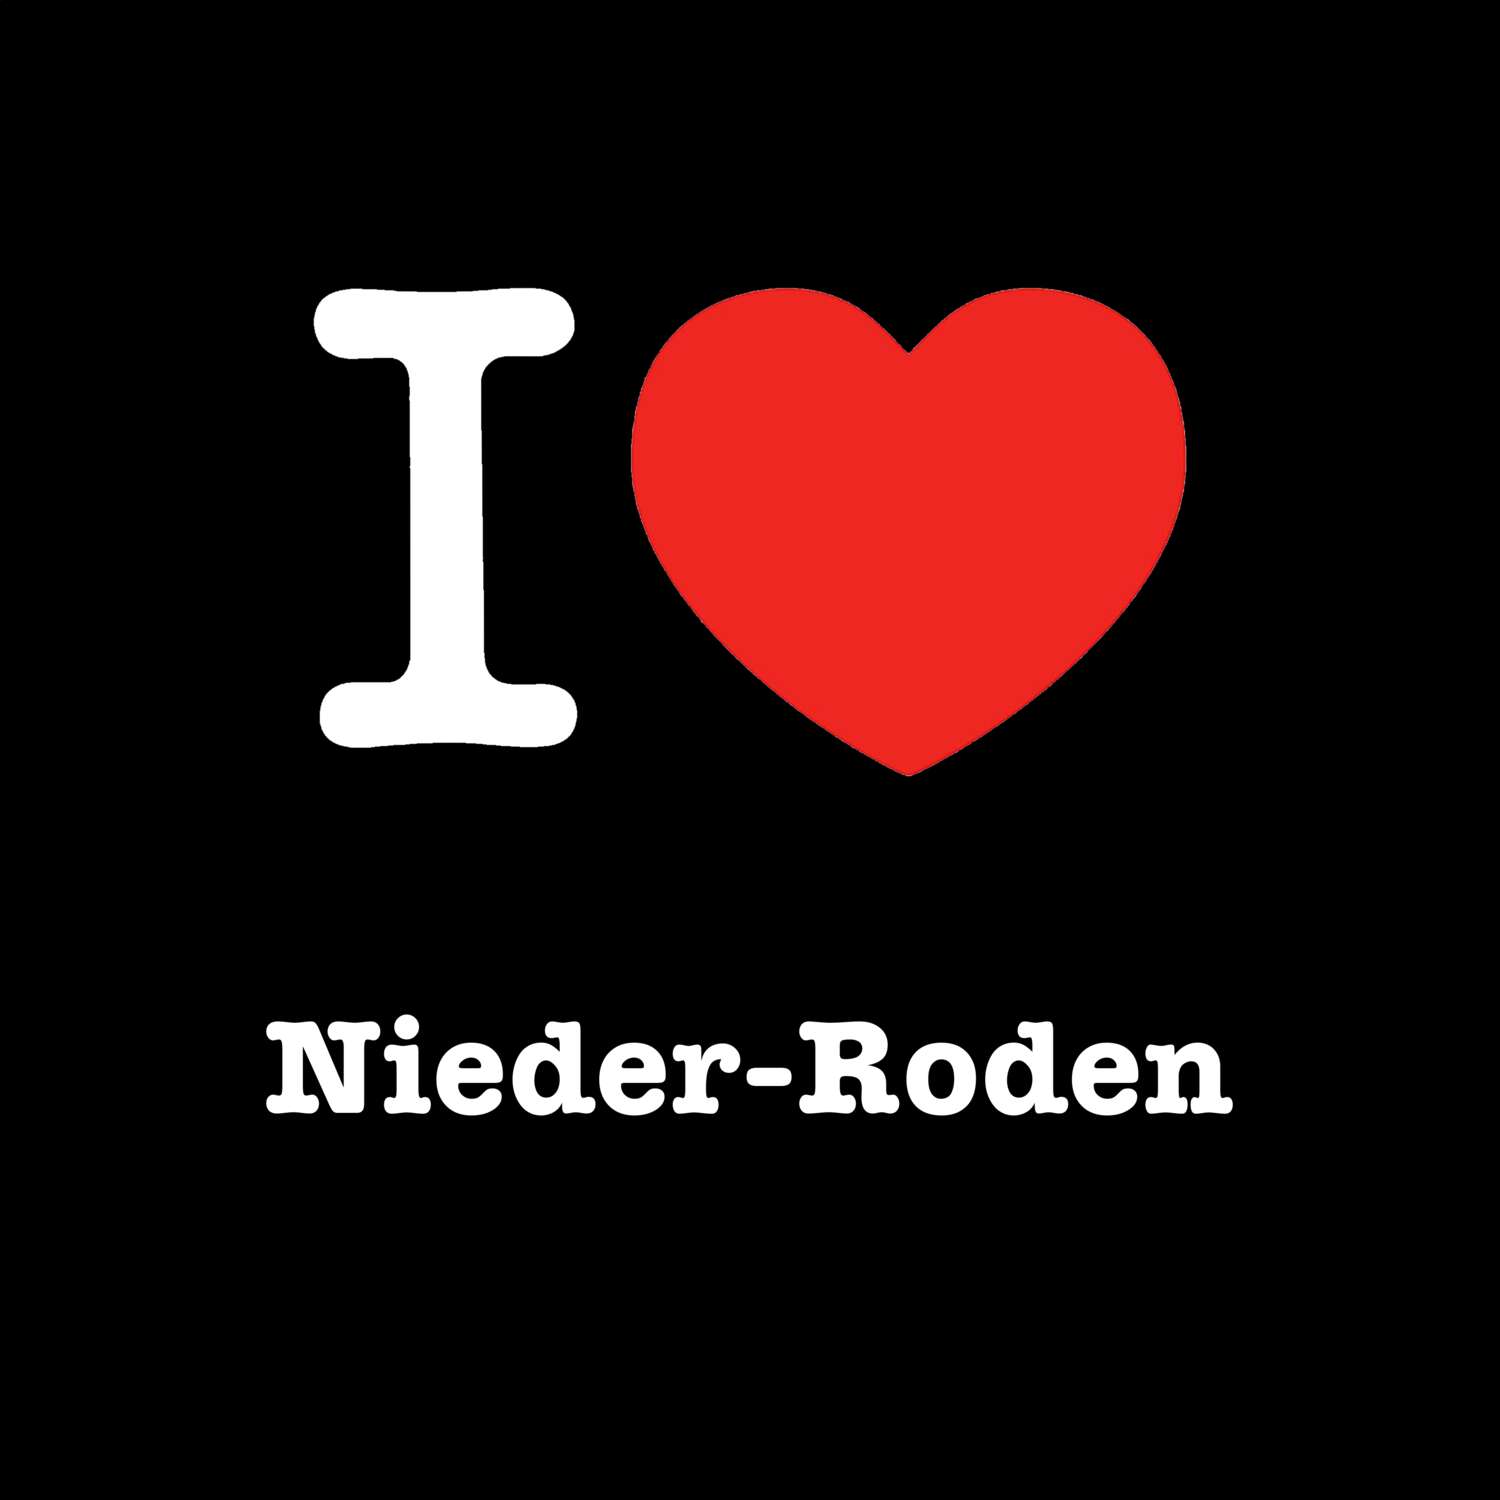 Nieder-Roden T-Shirt »I love«